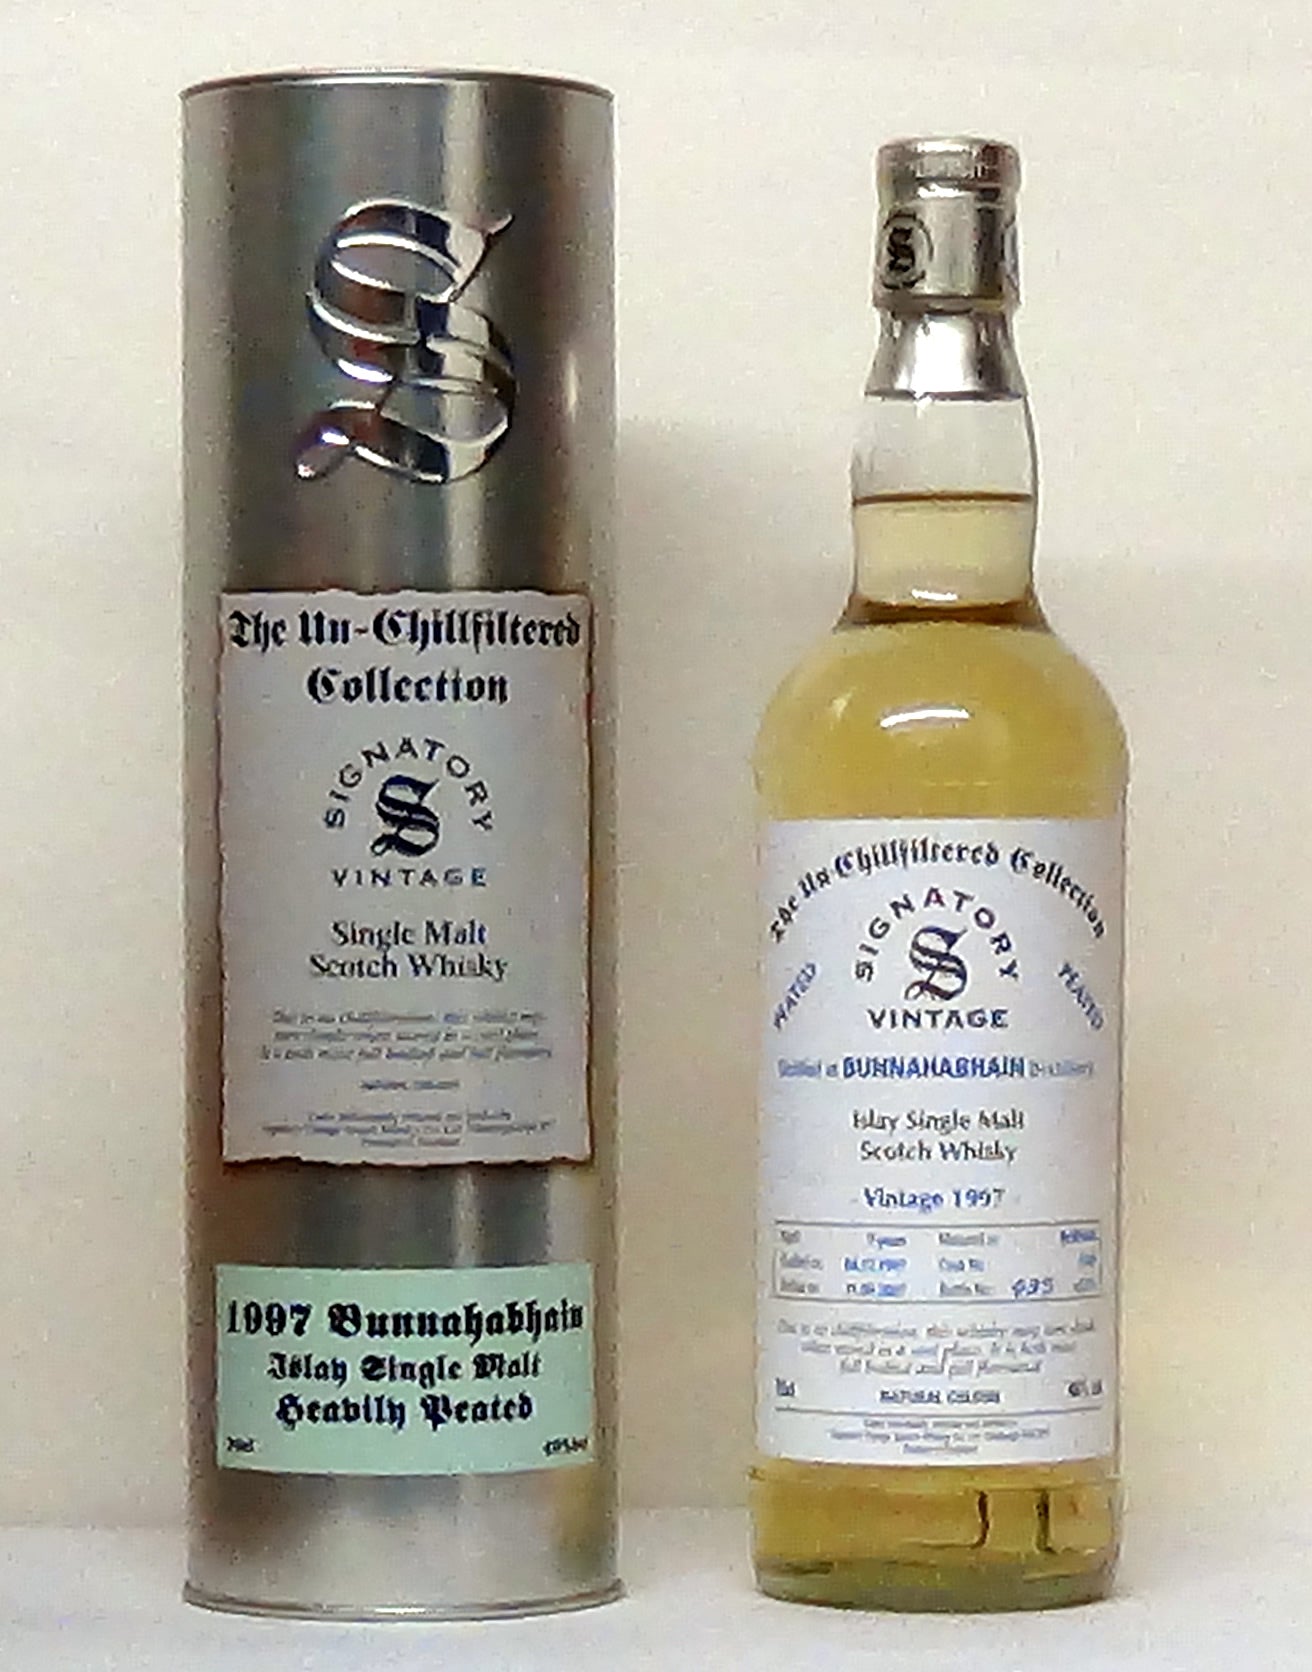 1997 Bunnahabhain Islay Malt 9 Year Old - Scotland, Whiskey - M&M Pers